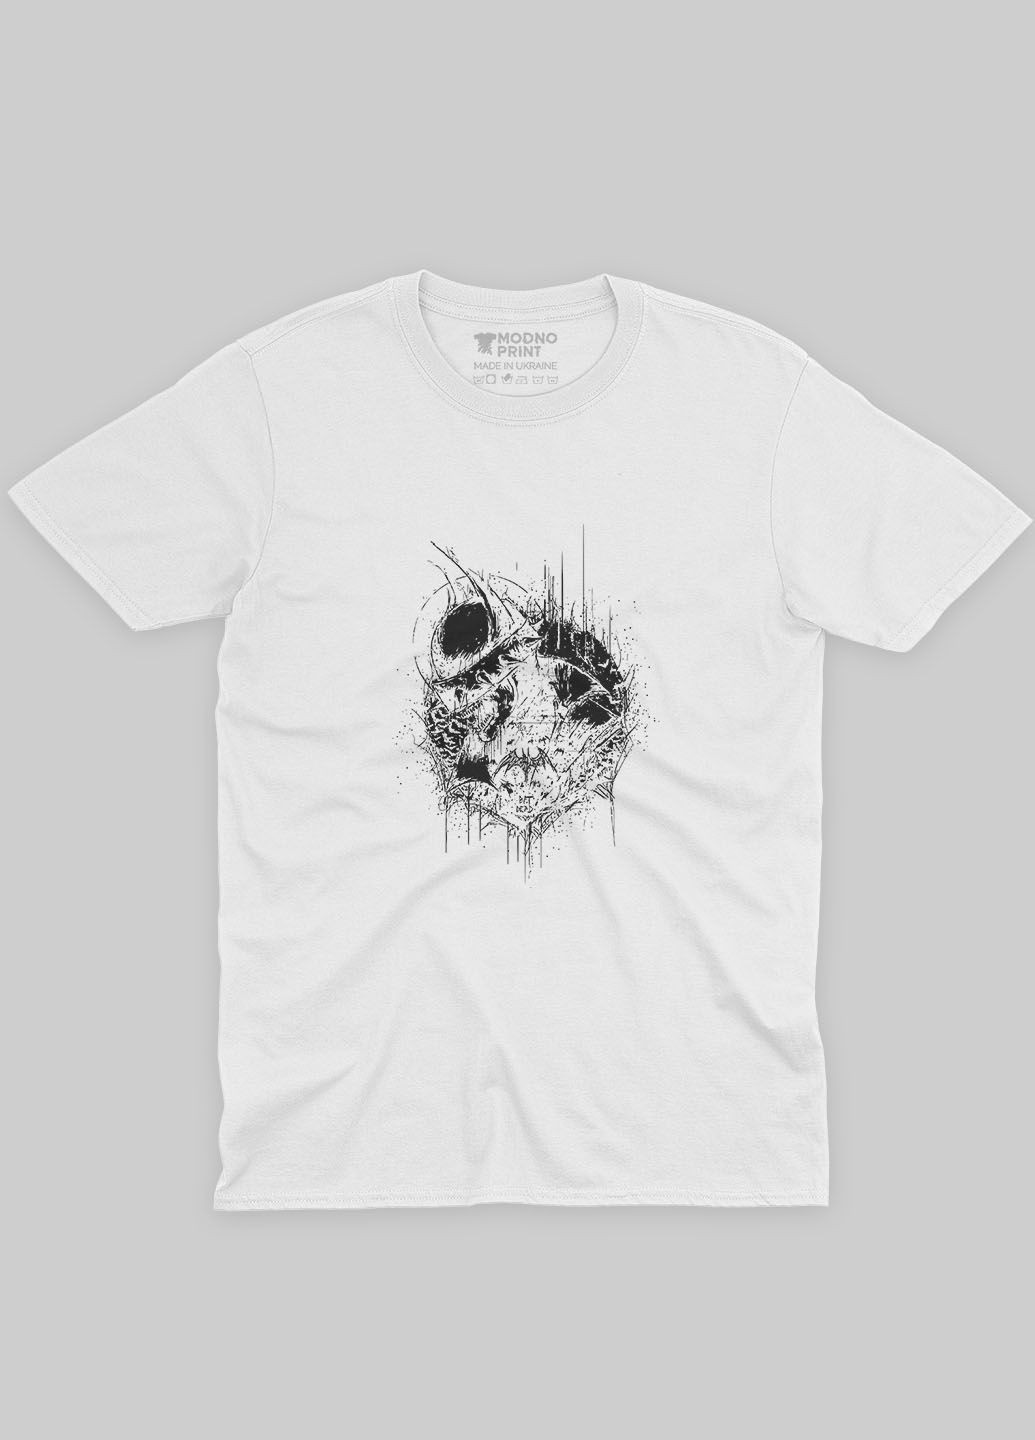 Белая демисезонная футболка для девочки с принтом супергероя - бэтмен (ts001-1-whi-006-003-044-g) Modno